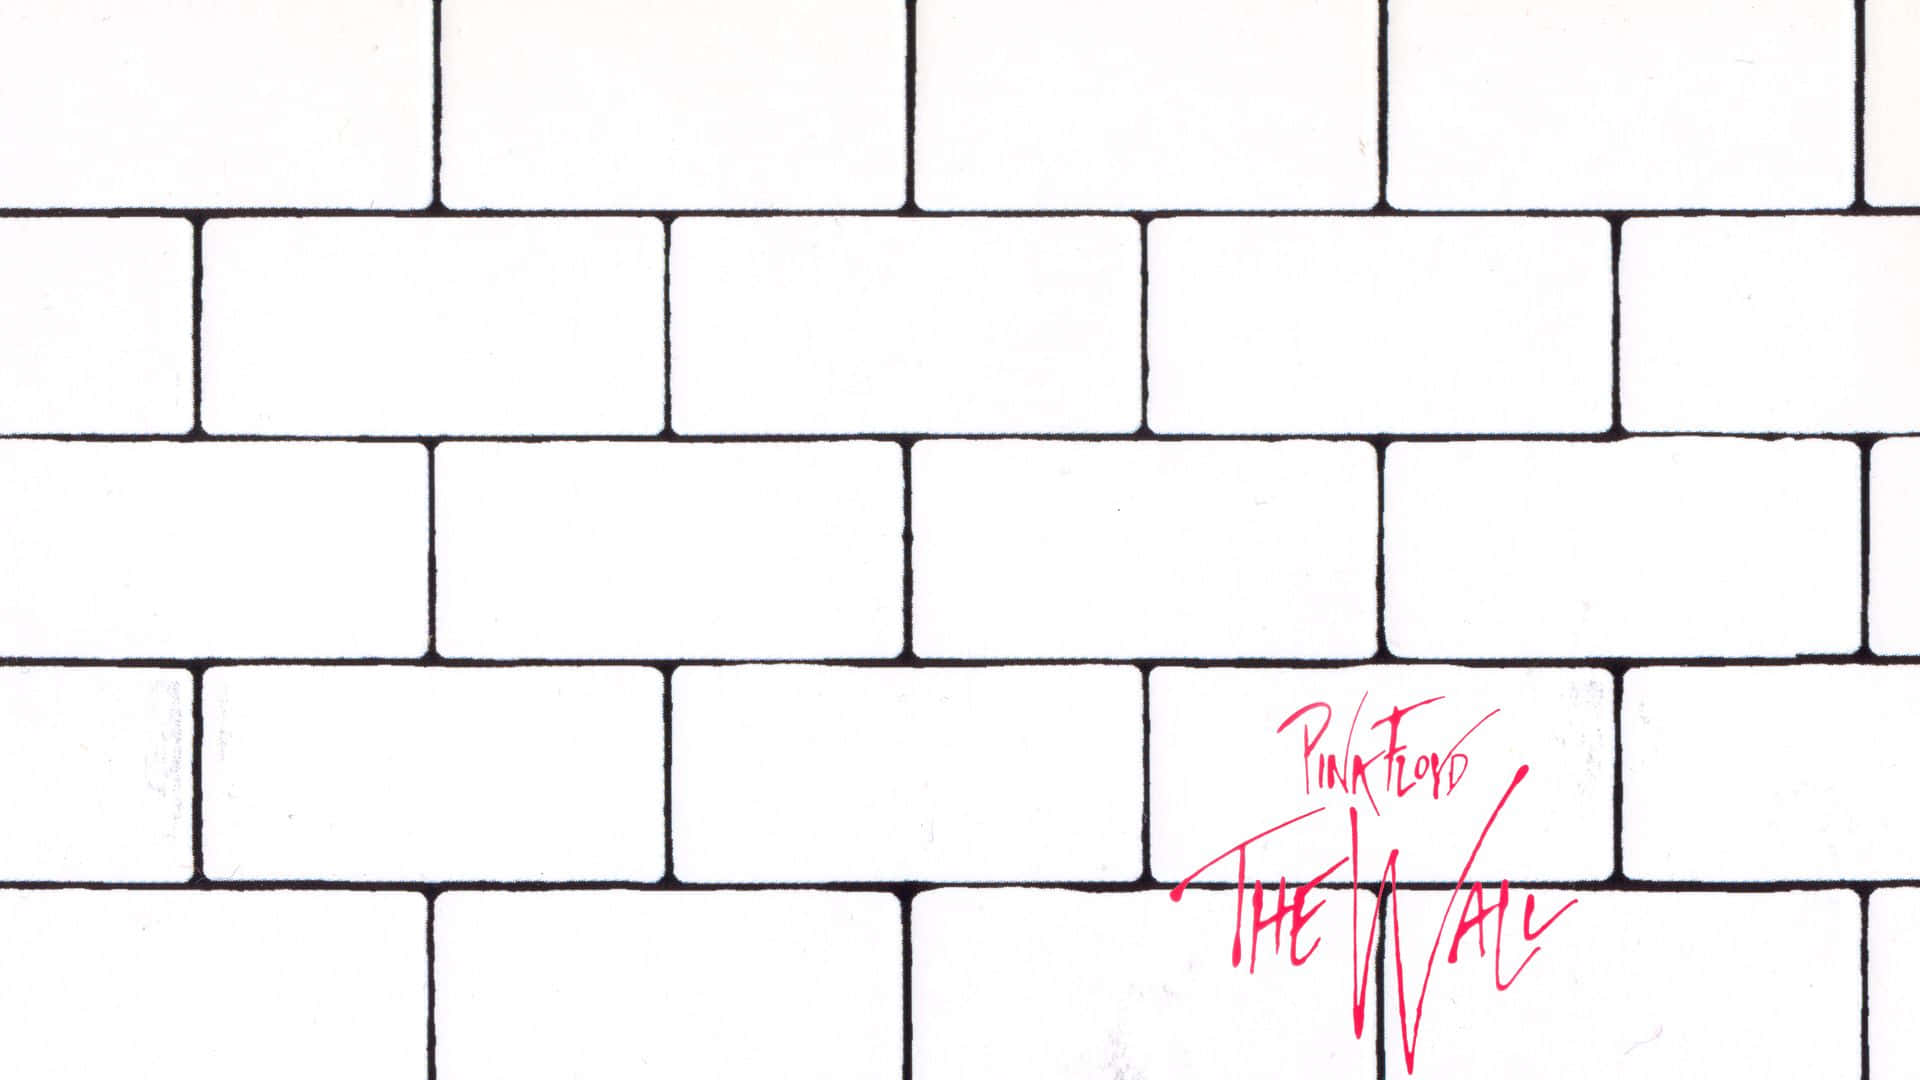 Pinkfloyd - Die Mauer Wallpaper